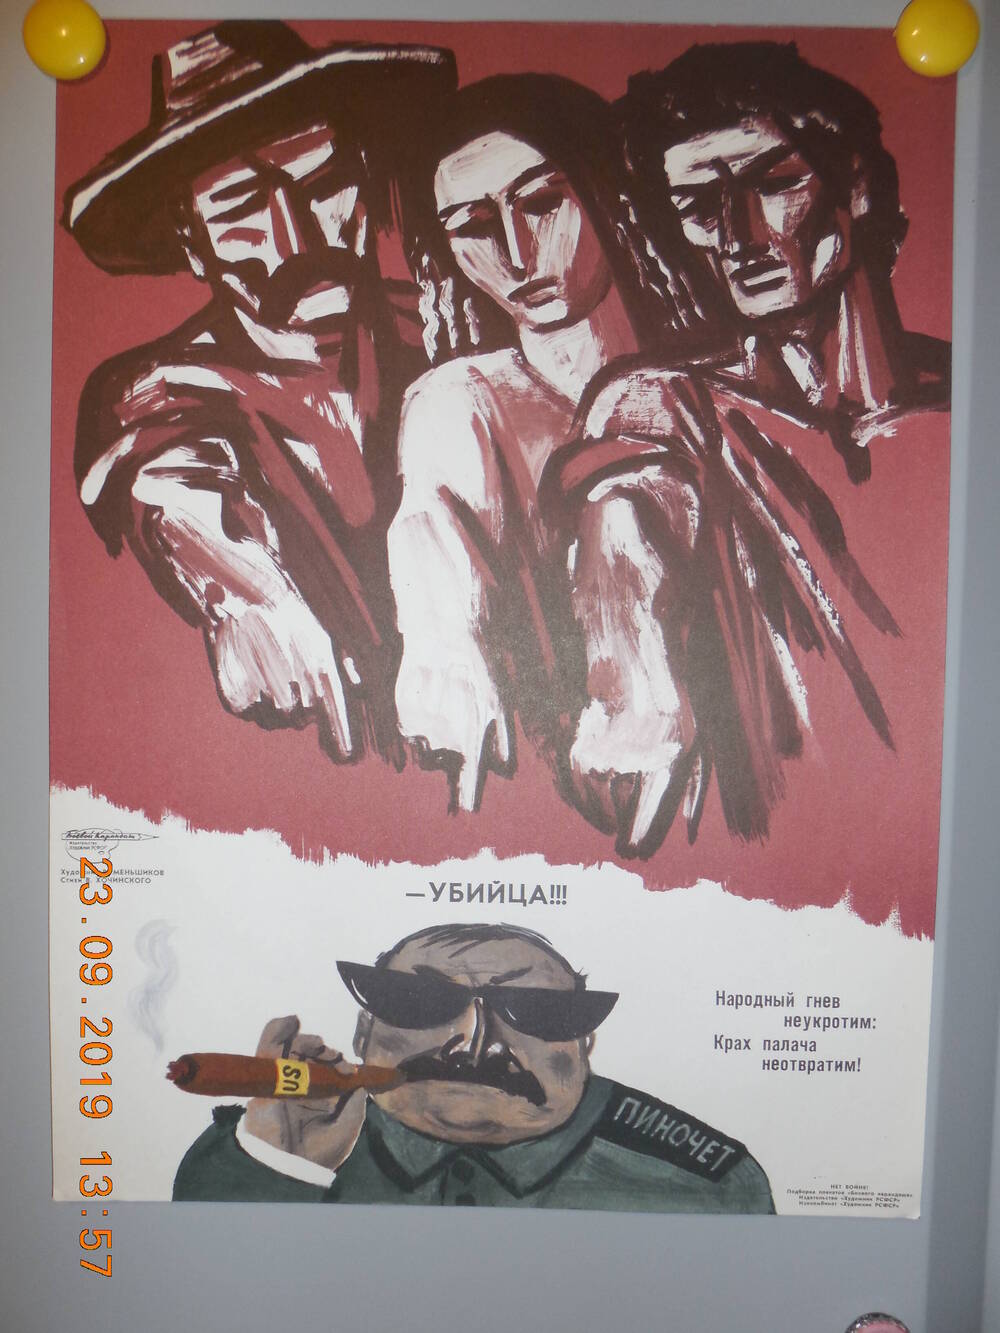 Плакат из подборки сатирических плакатов творческого объединения Боевой карандаш НЕТ ВОЙНЕ
- Убийца!!!